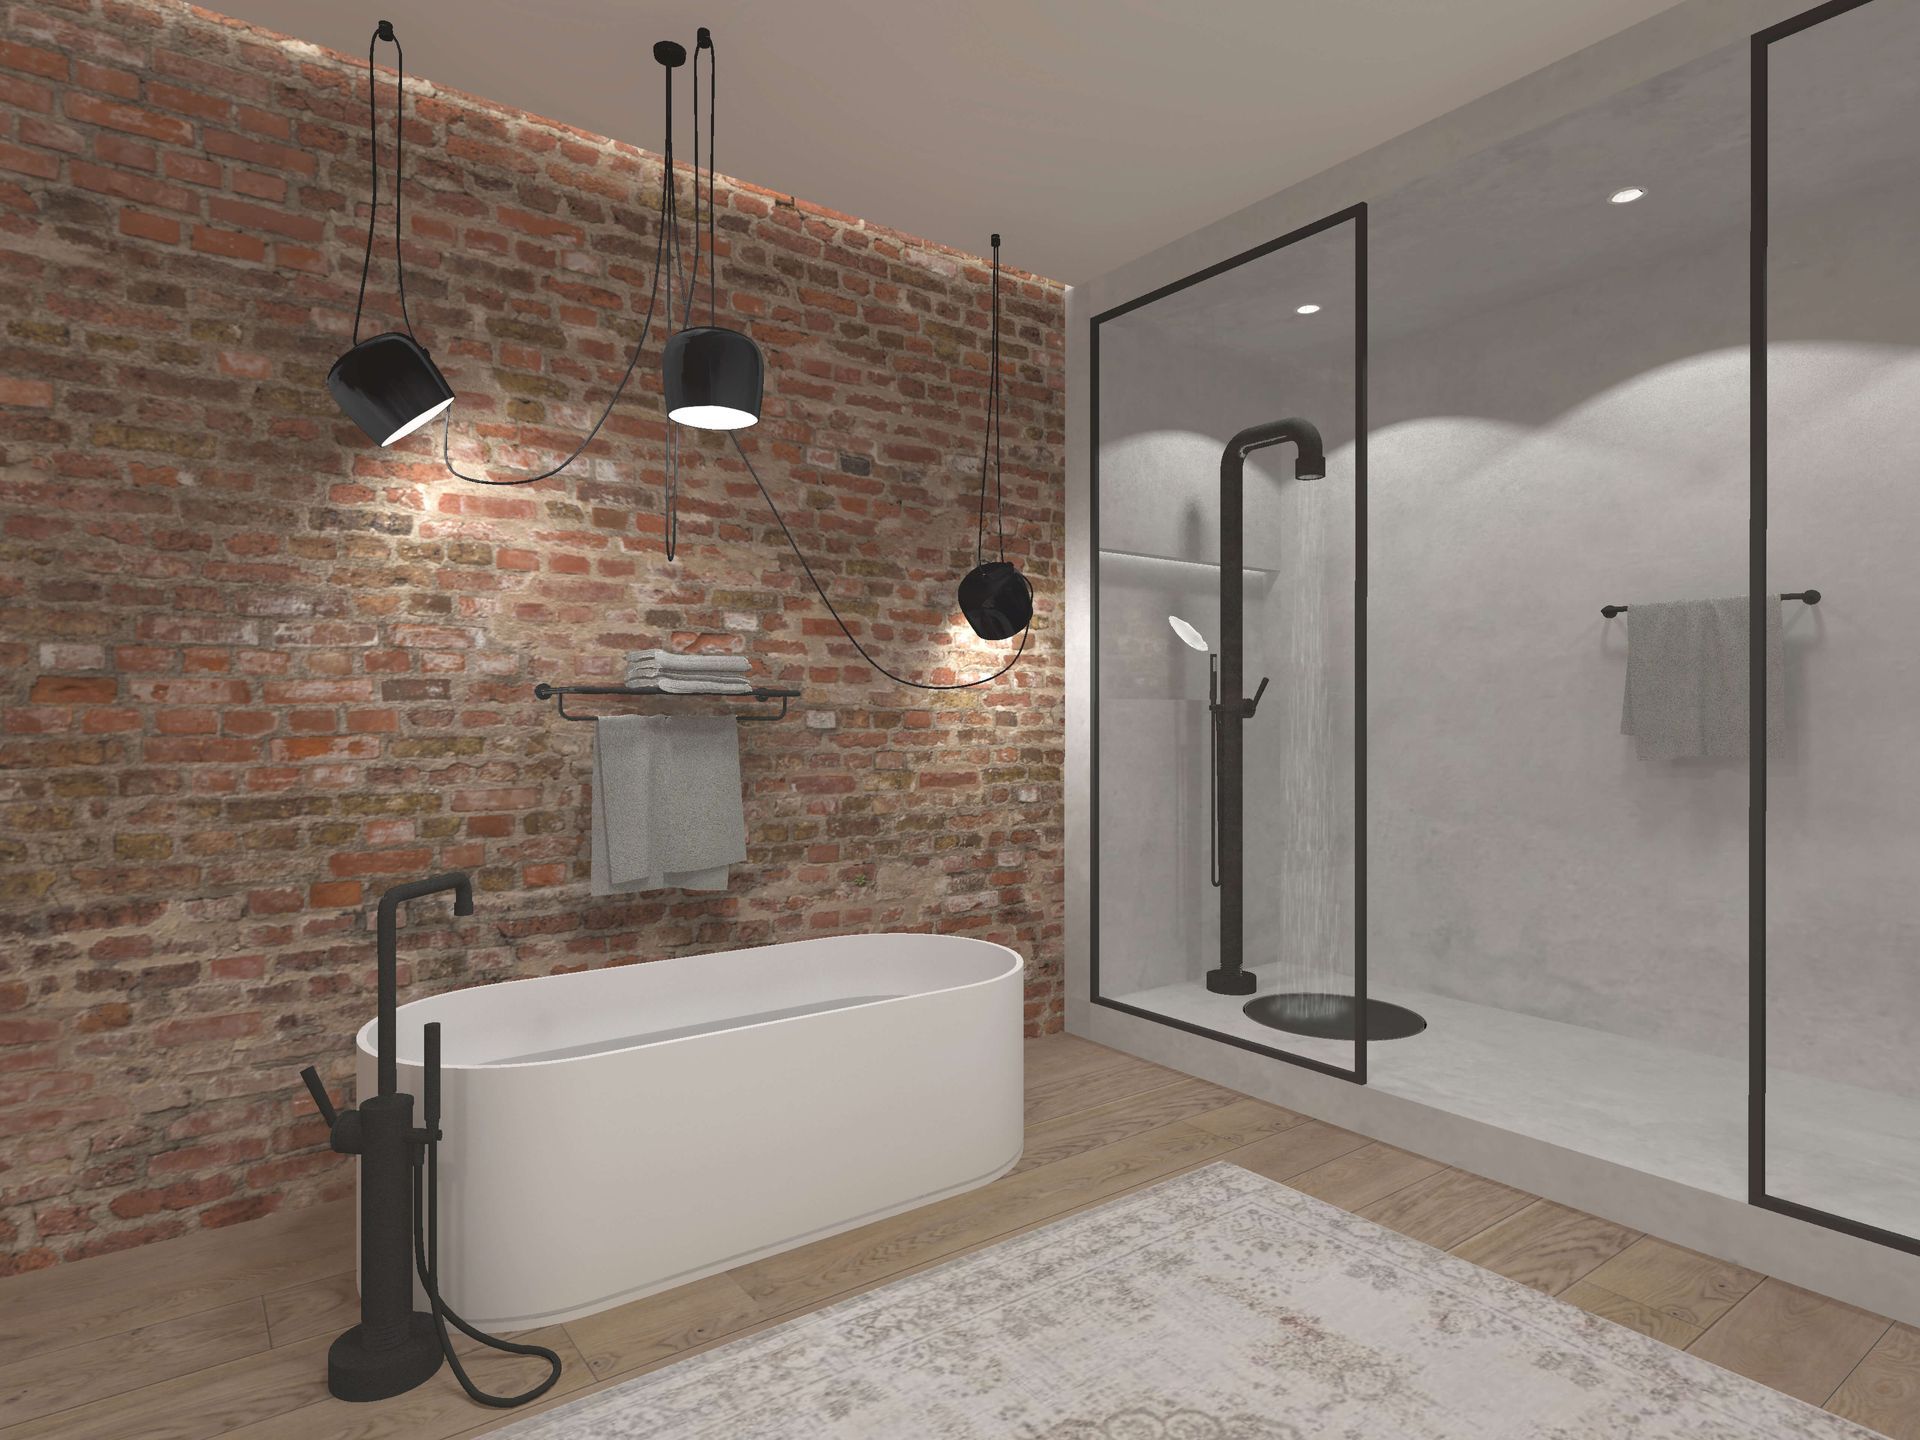 Les nouveautés de la salle de bains au salon de Milan, montrent la mise en valeur de la baignoire